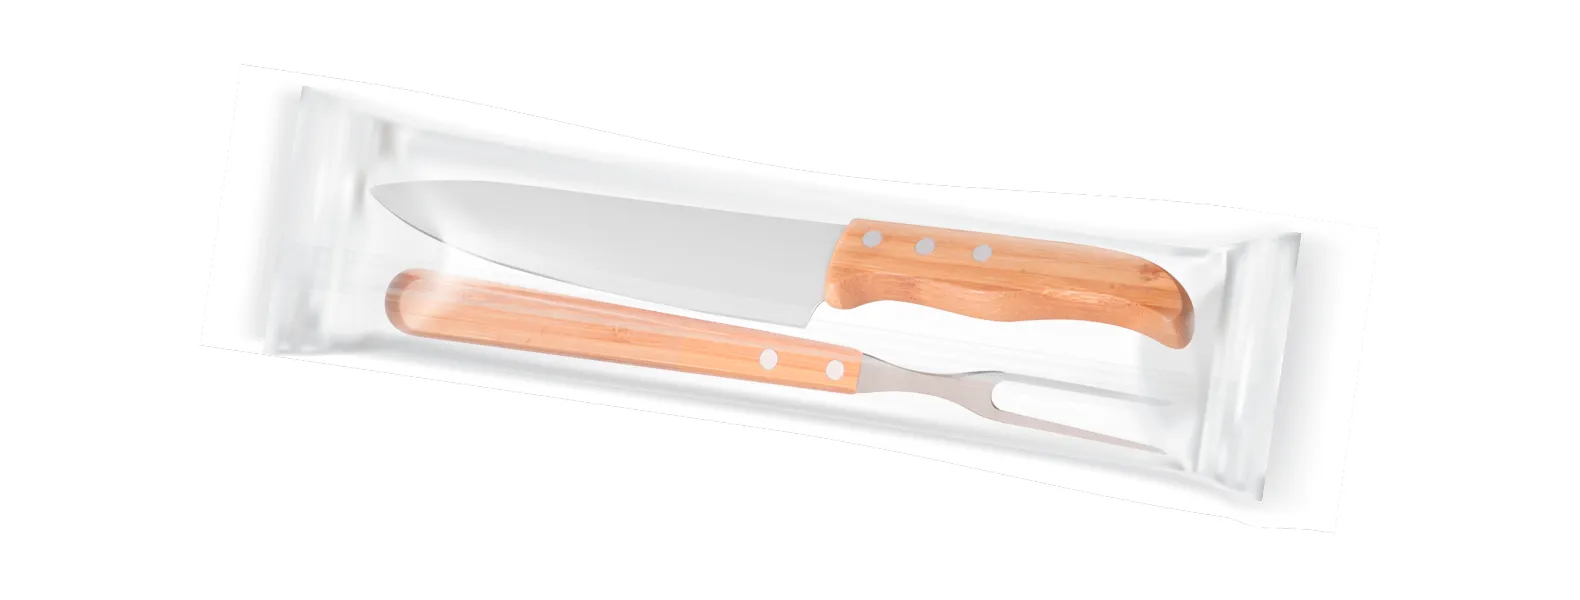 Conjunto de Faca em Bambu/Aço Inox; Acompanha faca 8'' e garfo em Bambu/Inox. Como cortesia, fazemos uma gravação na lâmina da faca com os cortes do boi.